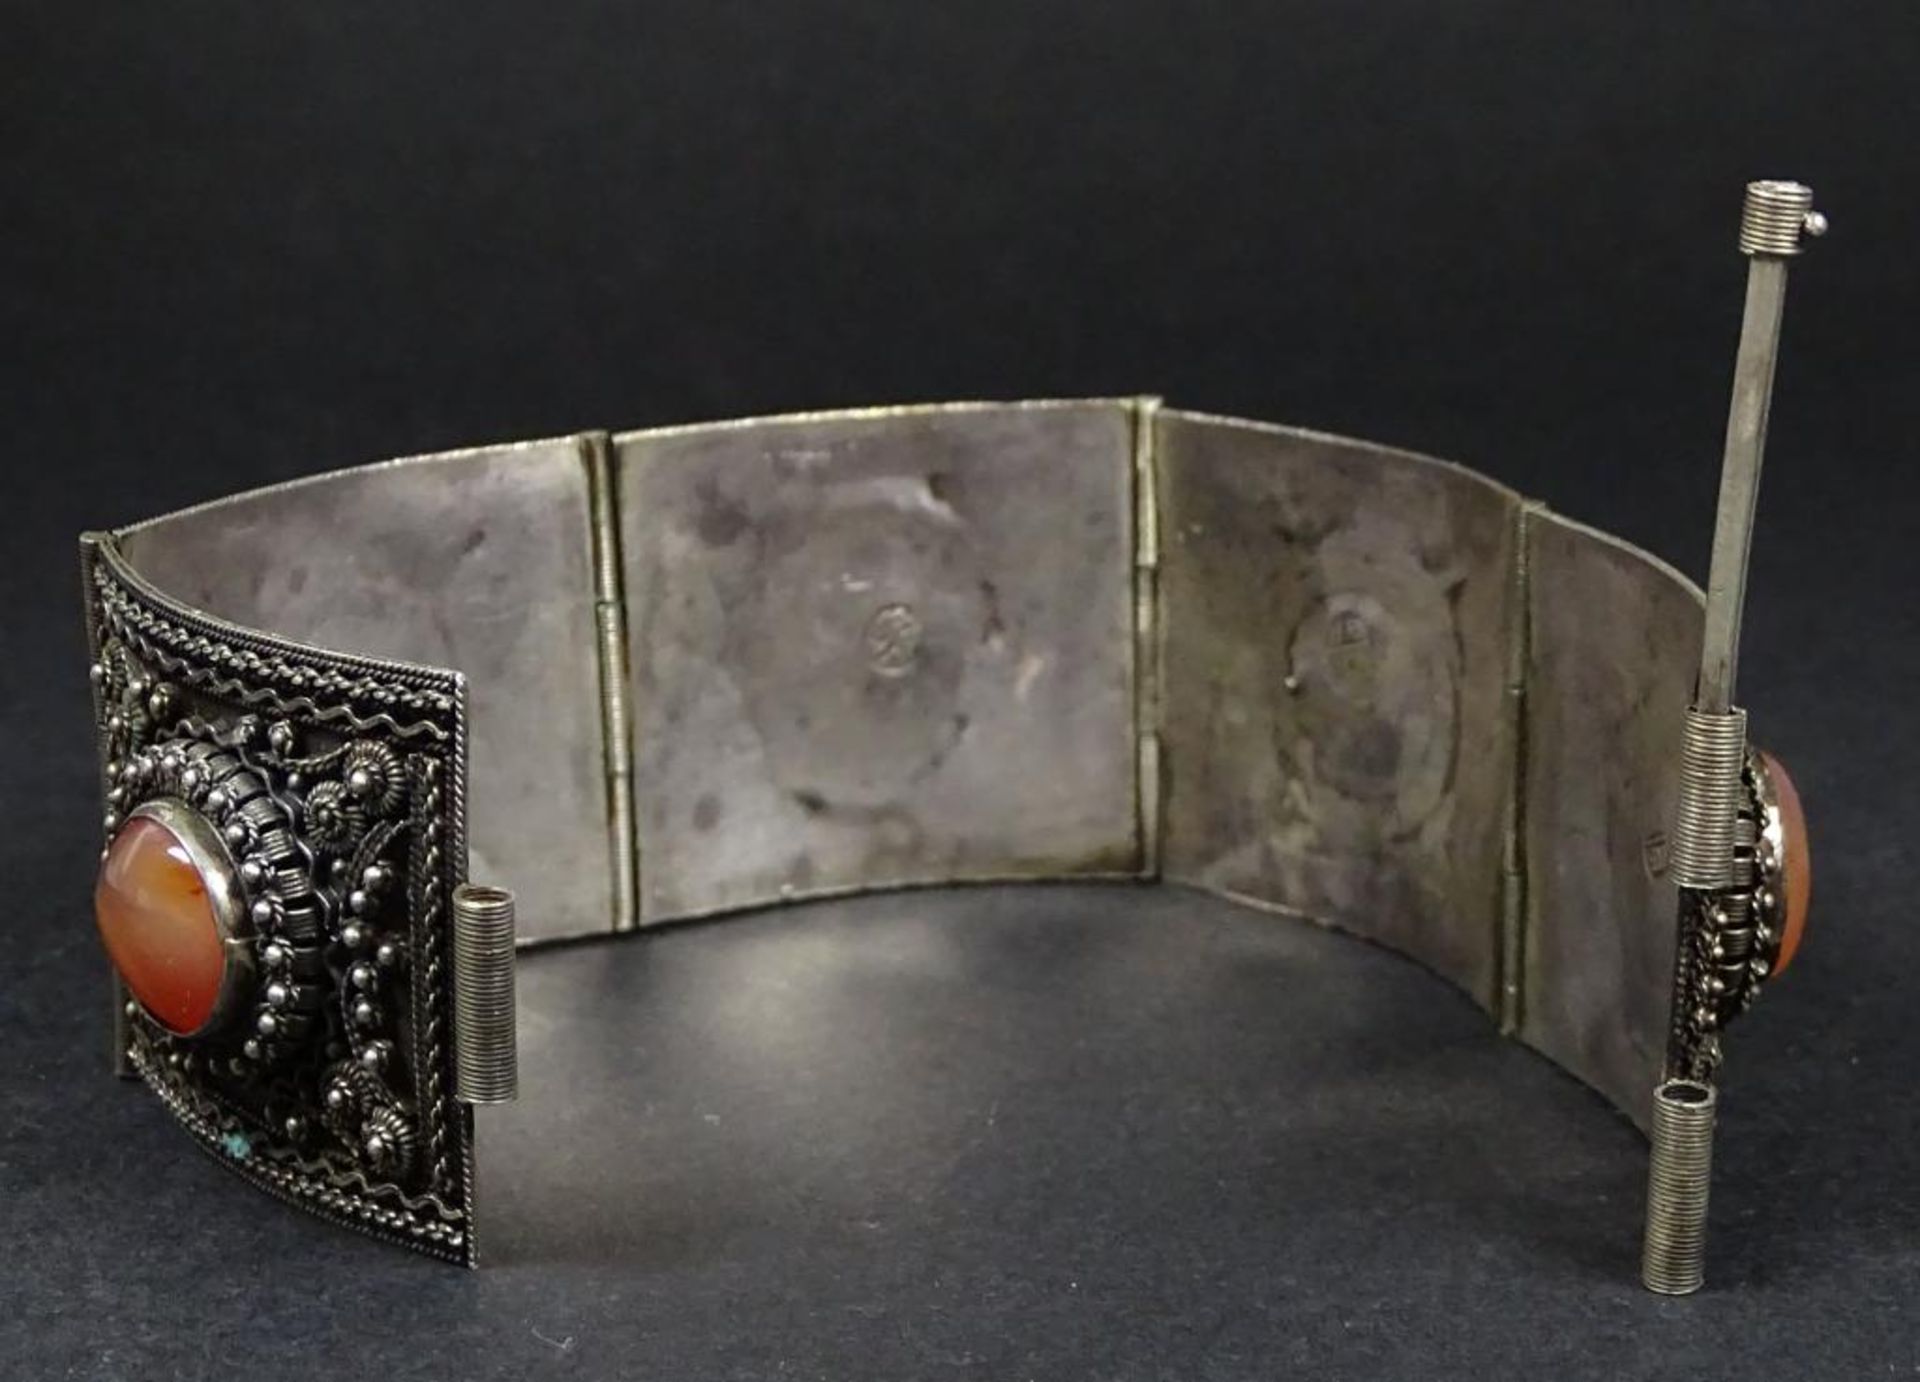 Armband,Silber -900- Meisterpunze JK, Achat,L- 18cm,b-31mm, 45gr. - Bild 4 aus 5